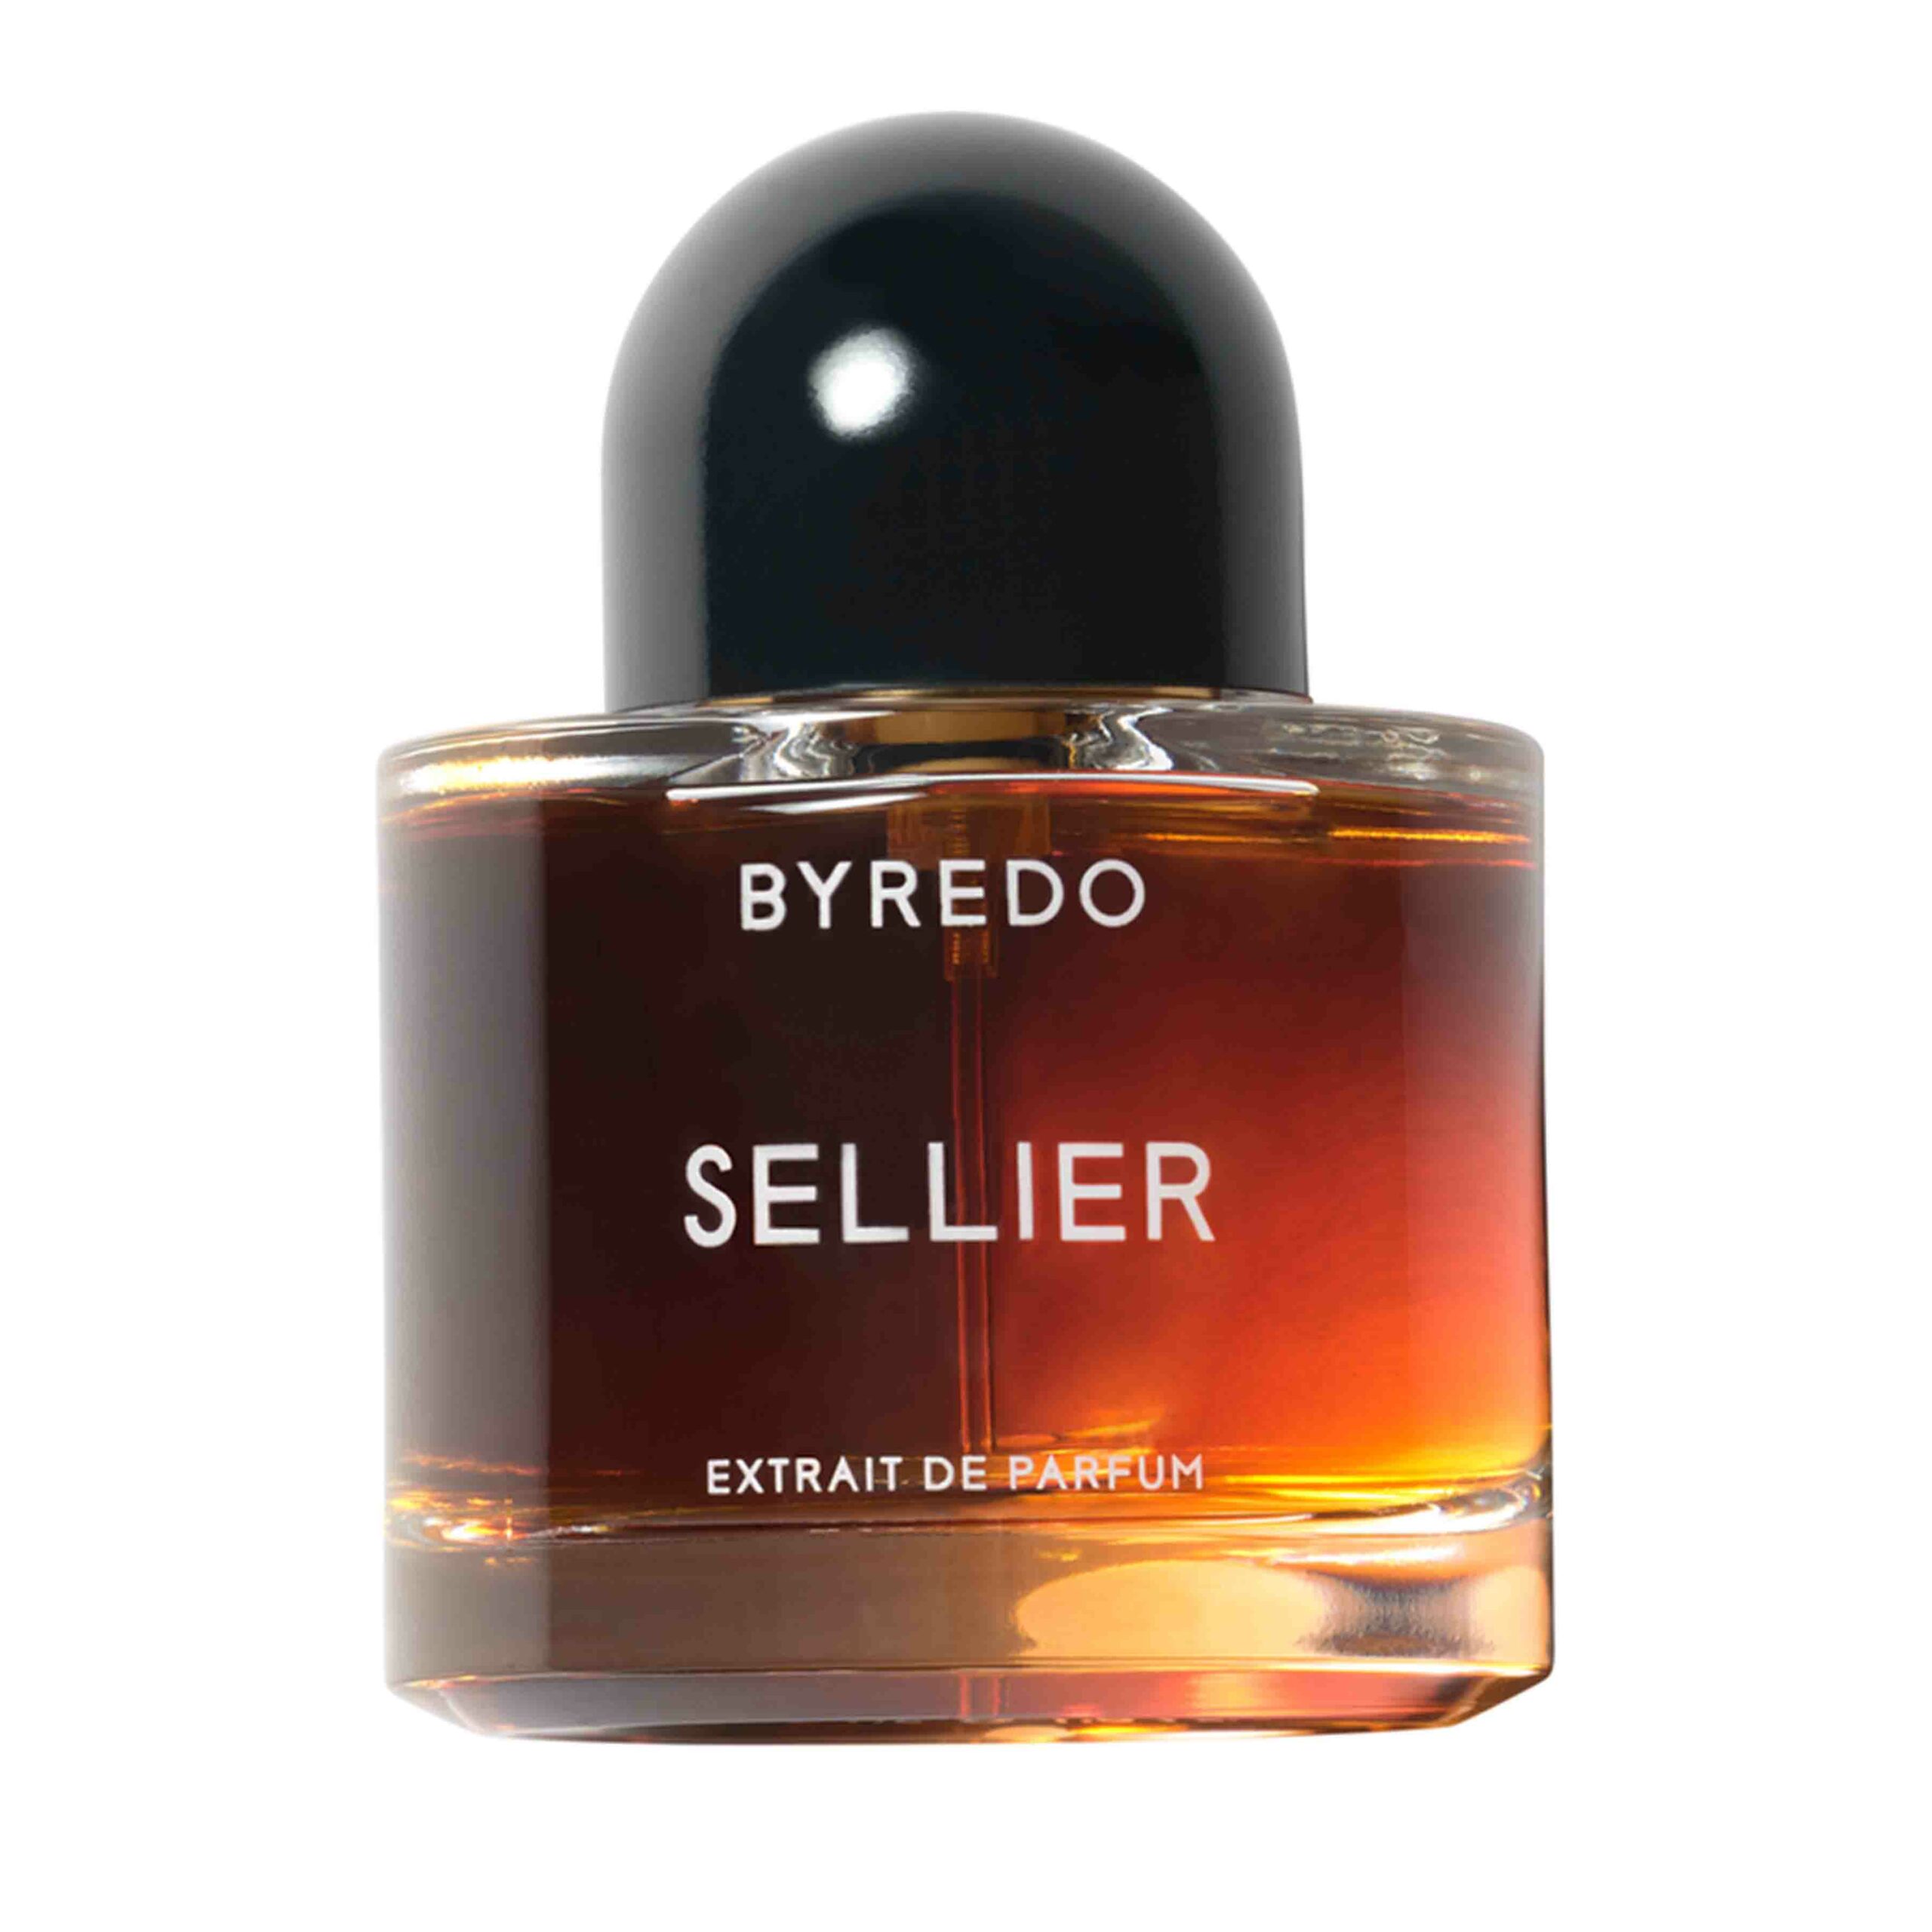 Die besten Parfums für Männer 2021: Byredo - Sellier